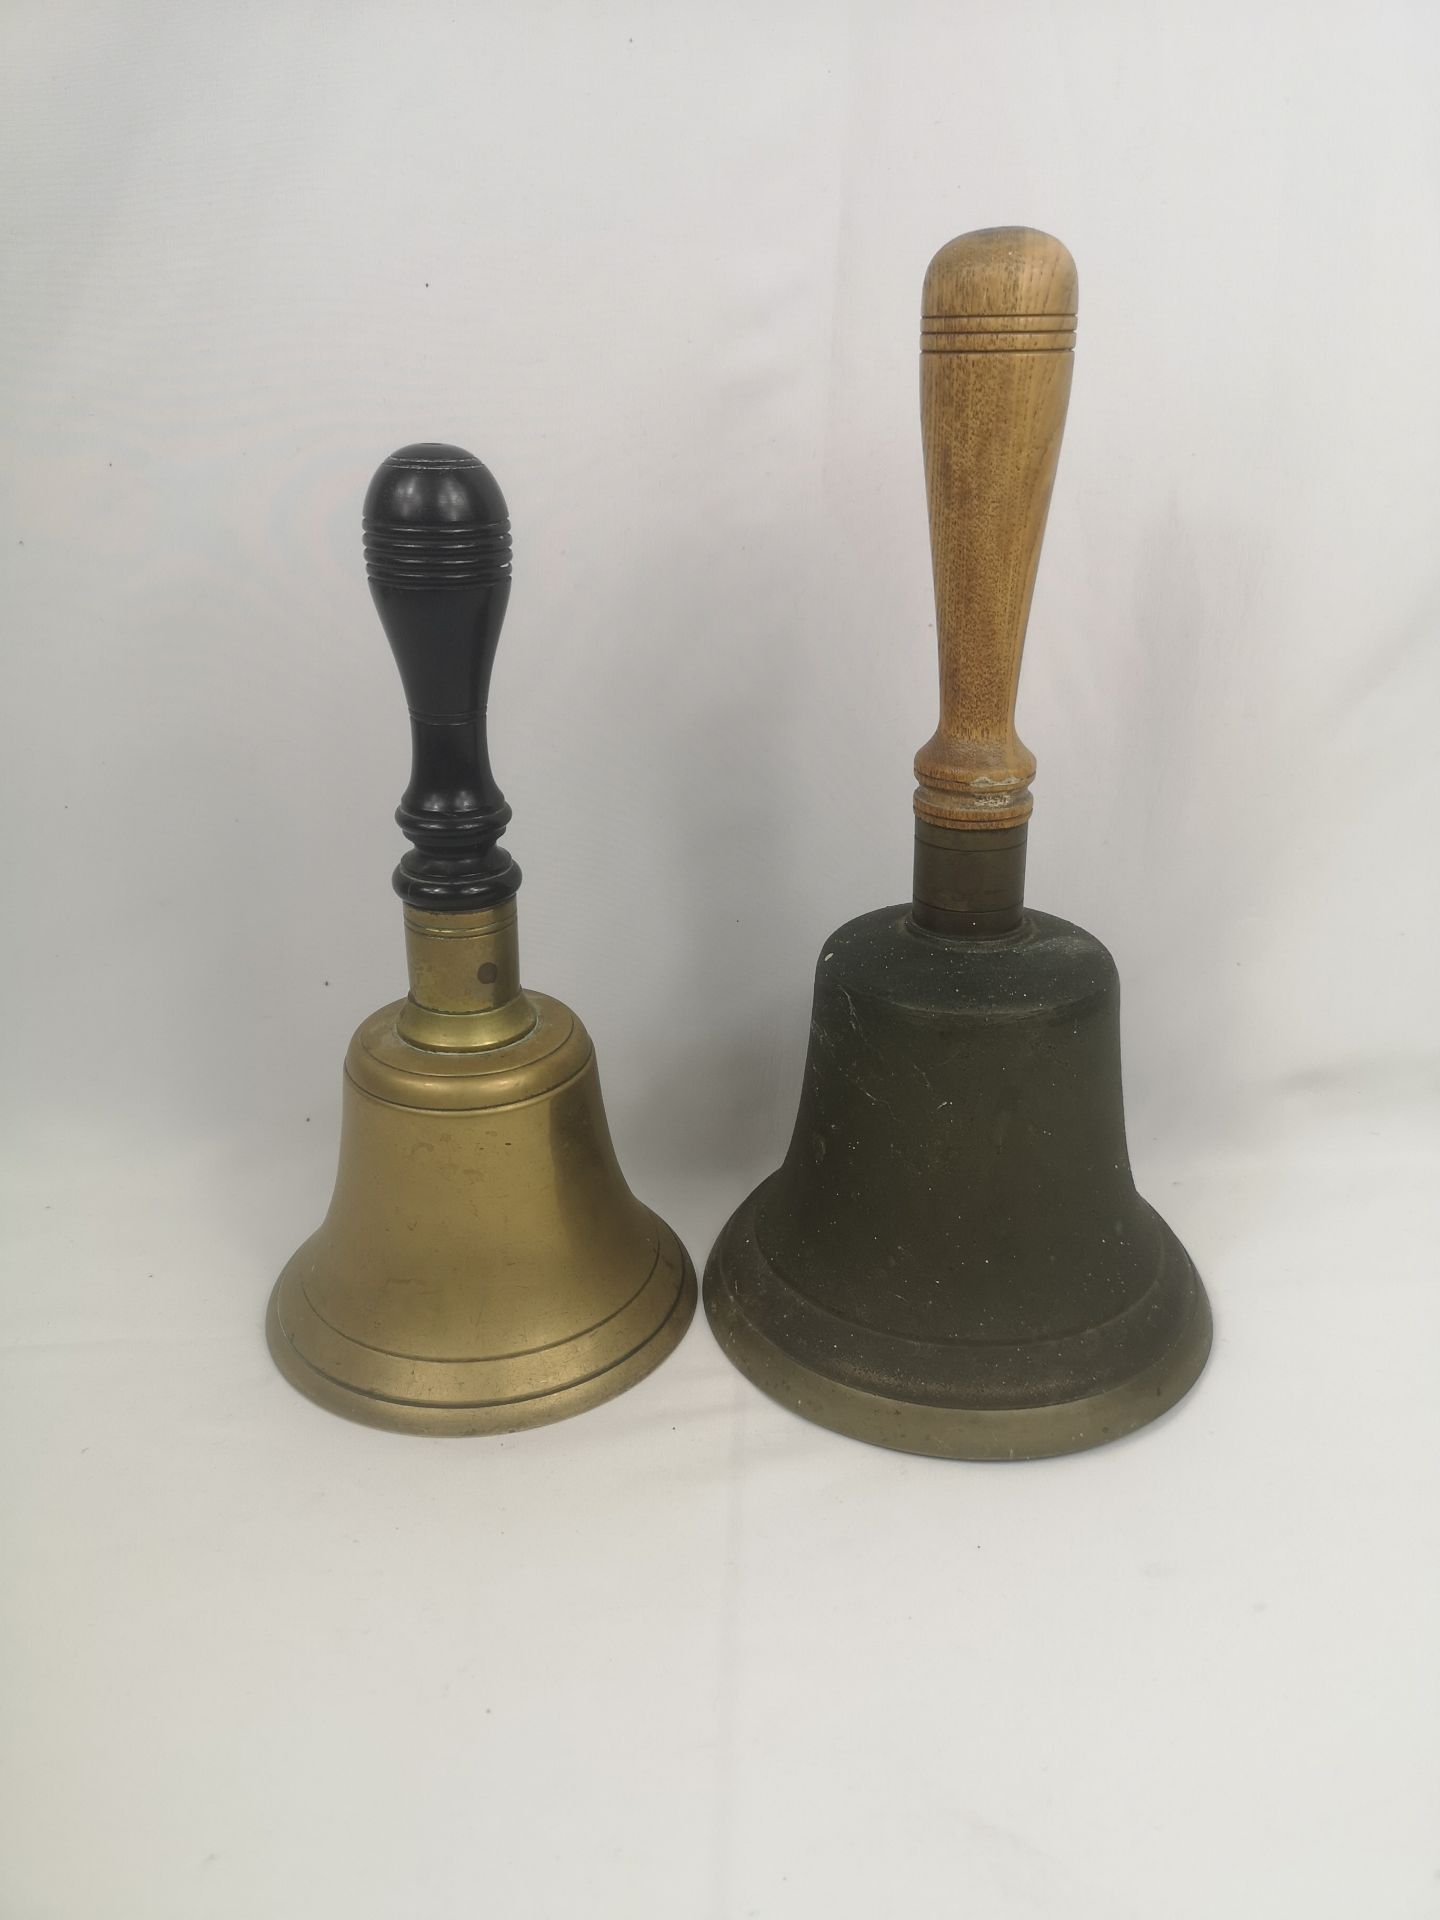 Two brass hand bells